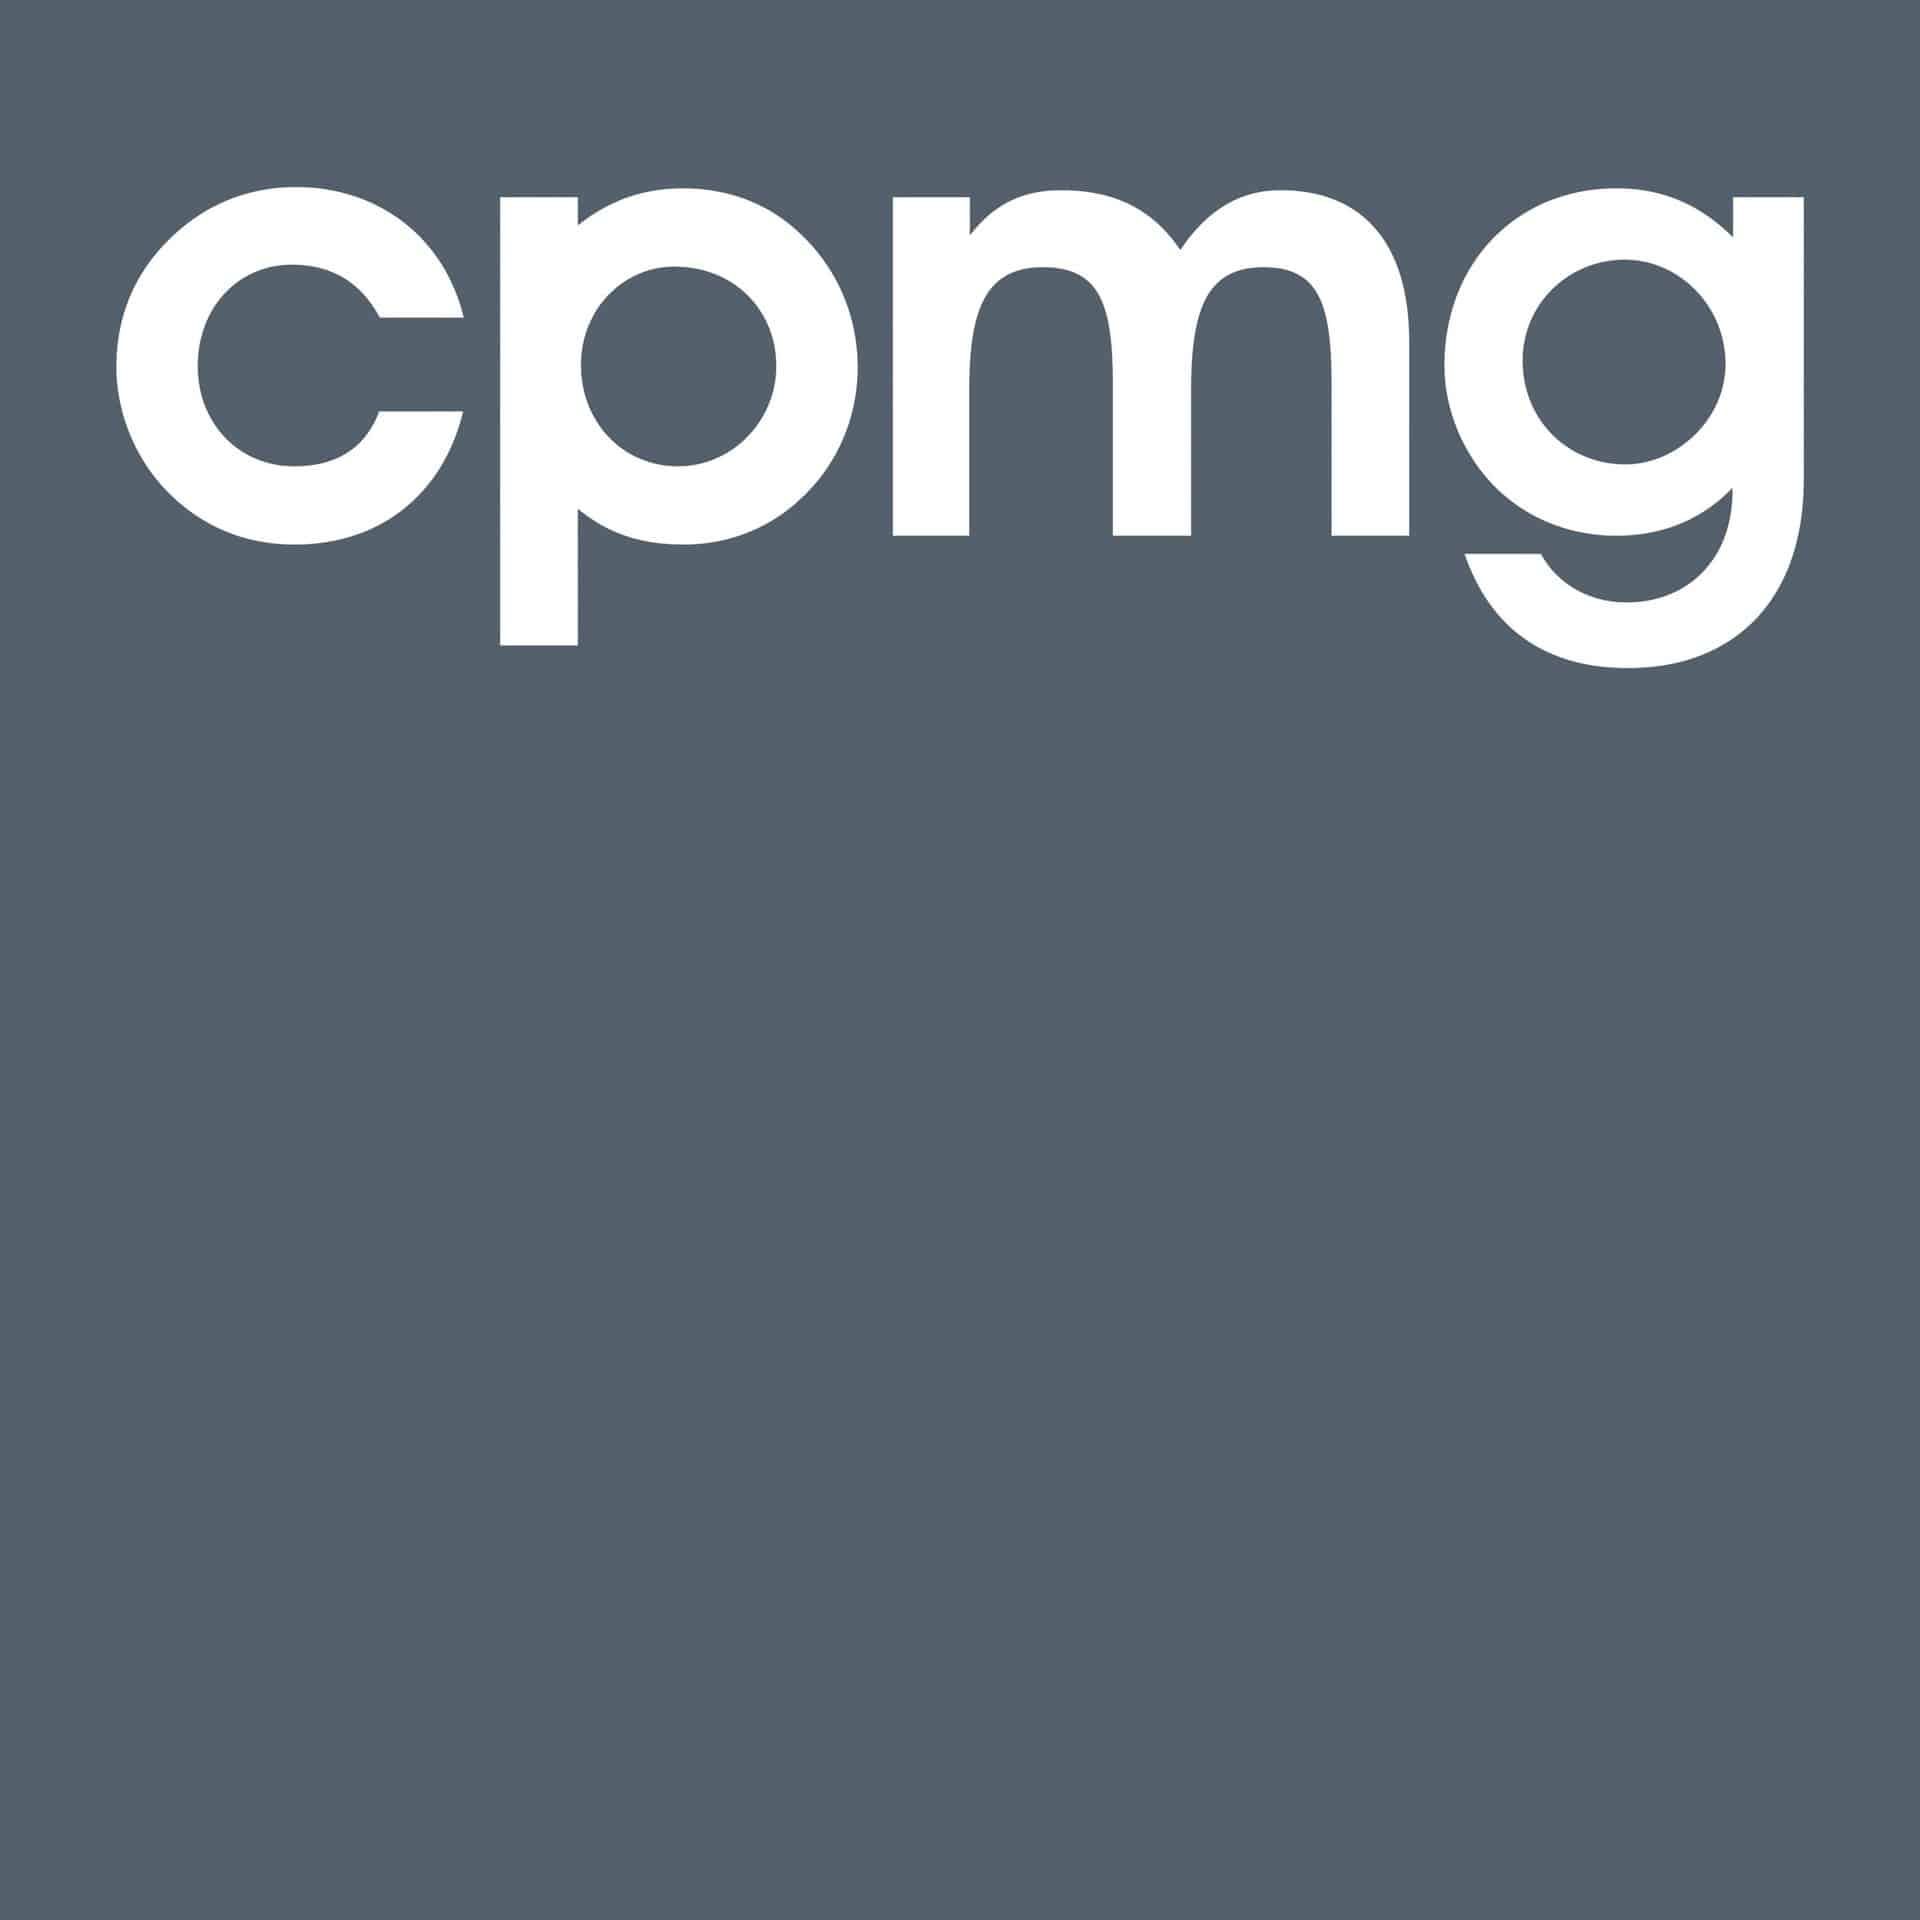 CPMG logo